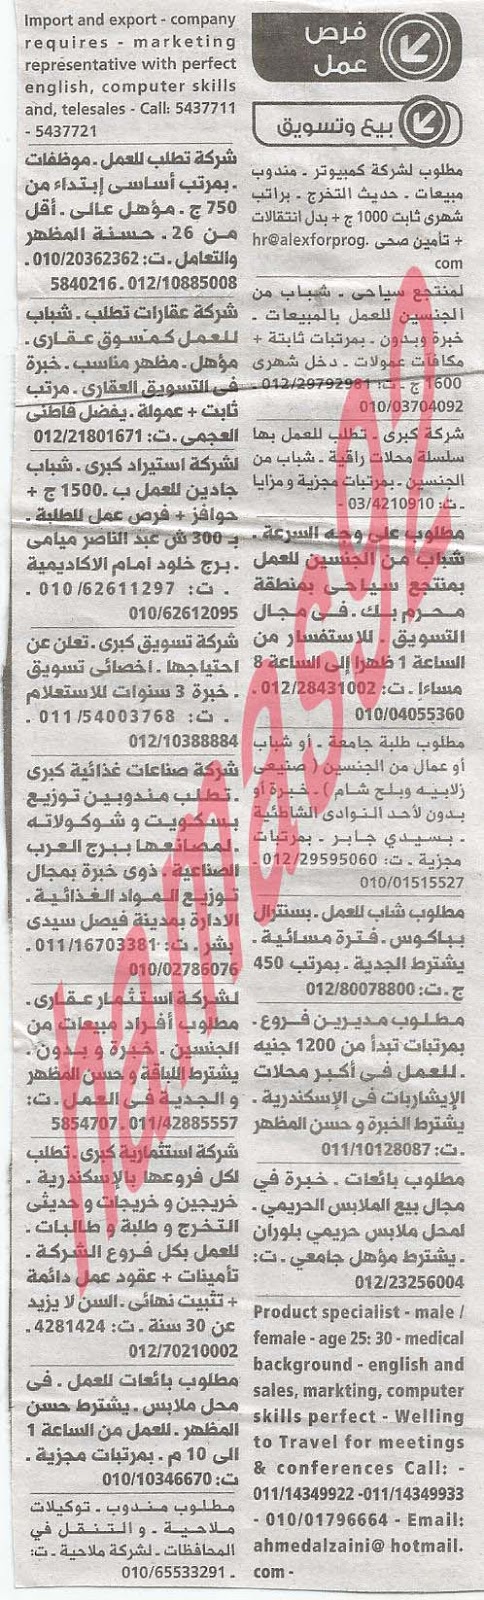 وظائف خالية فى جريدة الوسيط الاسكندرية الاحد 16-06-2013 %D9%88+%D8%B3+%D8%B3+3